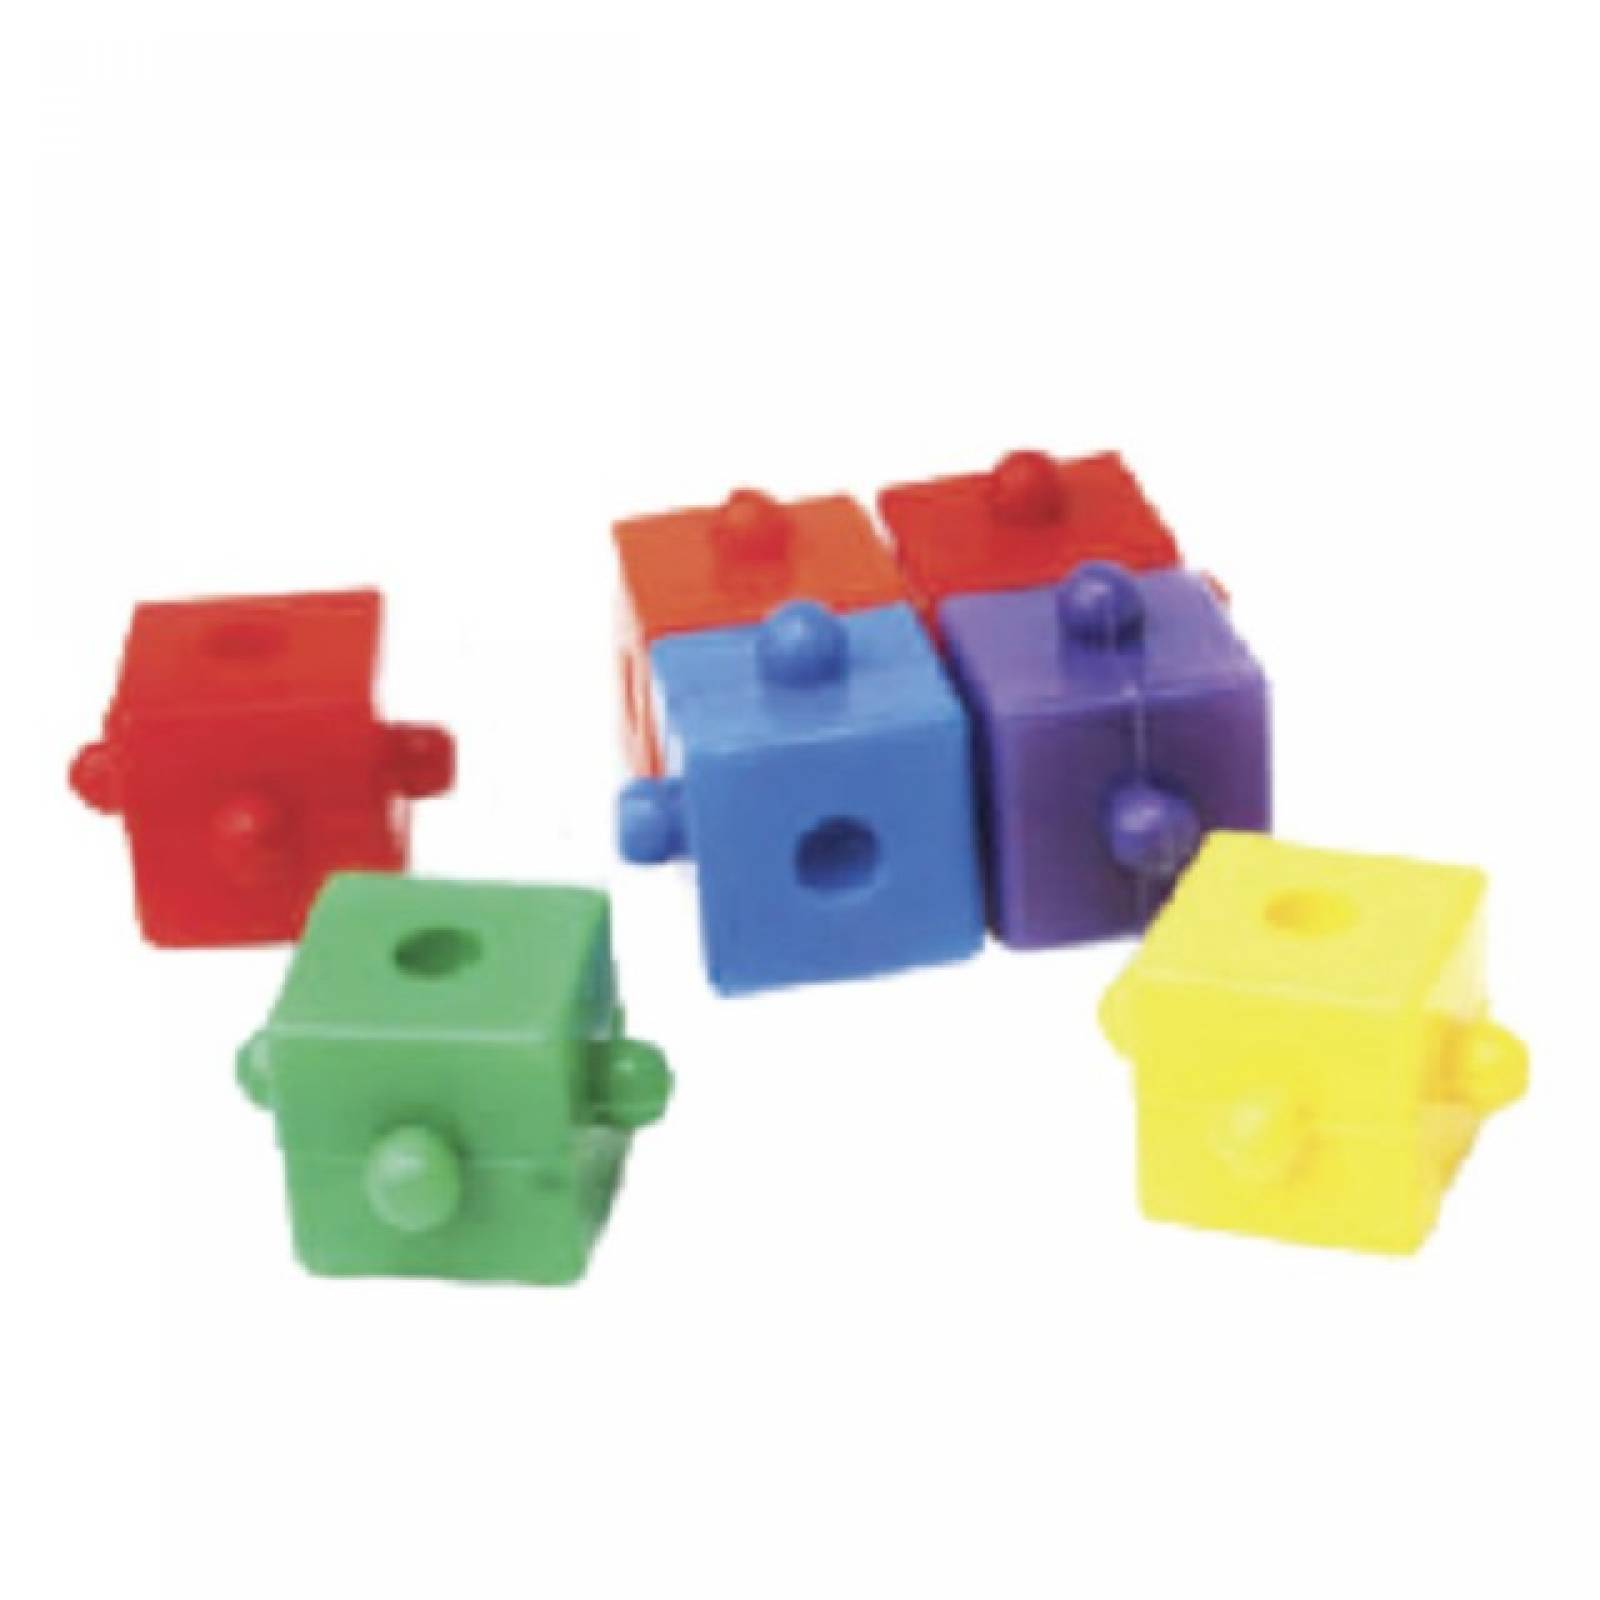 Set Cubi-Cubos juguete didÃ¡citco de la linea ConstrucciÃ³n